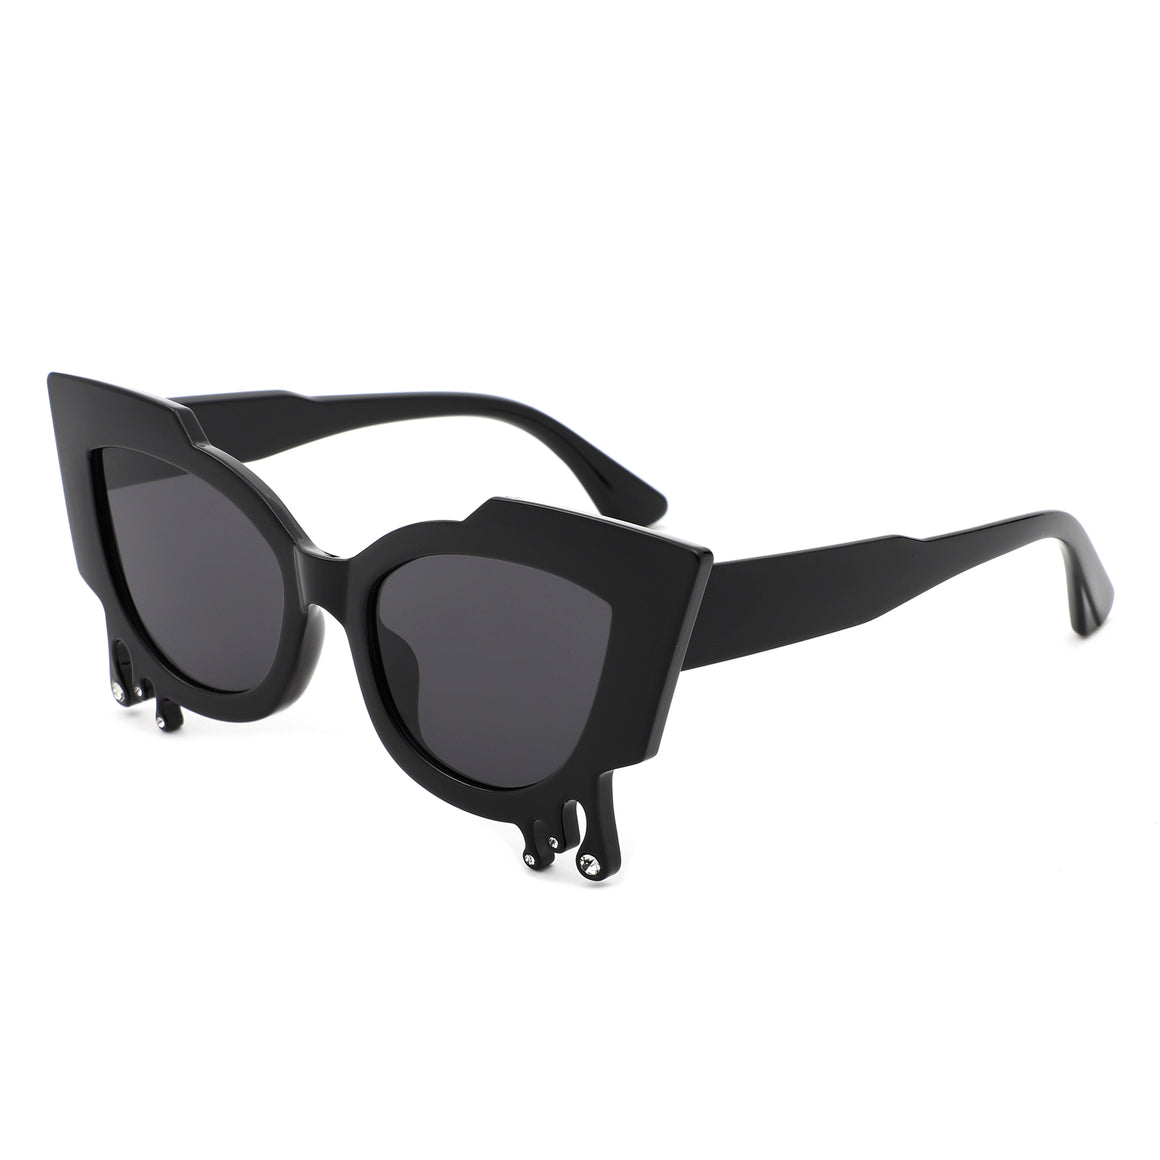 Surge - Irregular Cat Eye Rhinestone Drip Women's Fashion Sunglasses